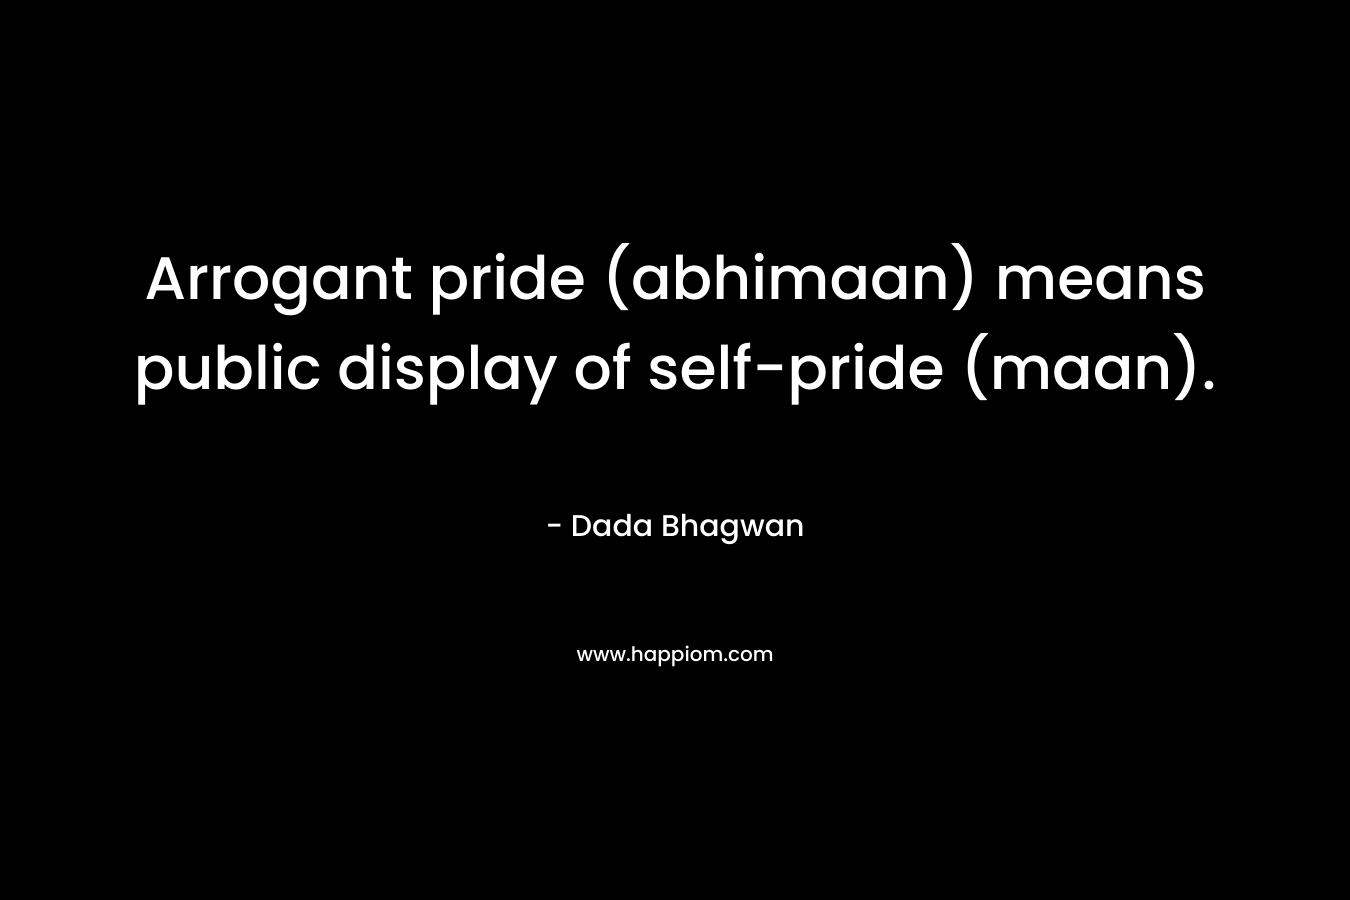 Arrogant pride (abhimaan) means public display of self-pride (maan).